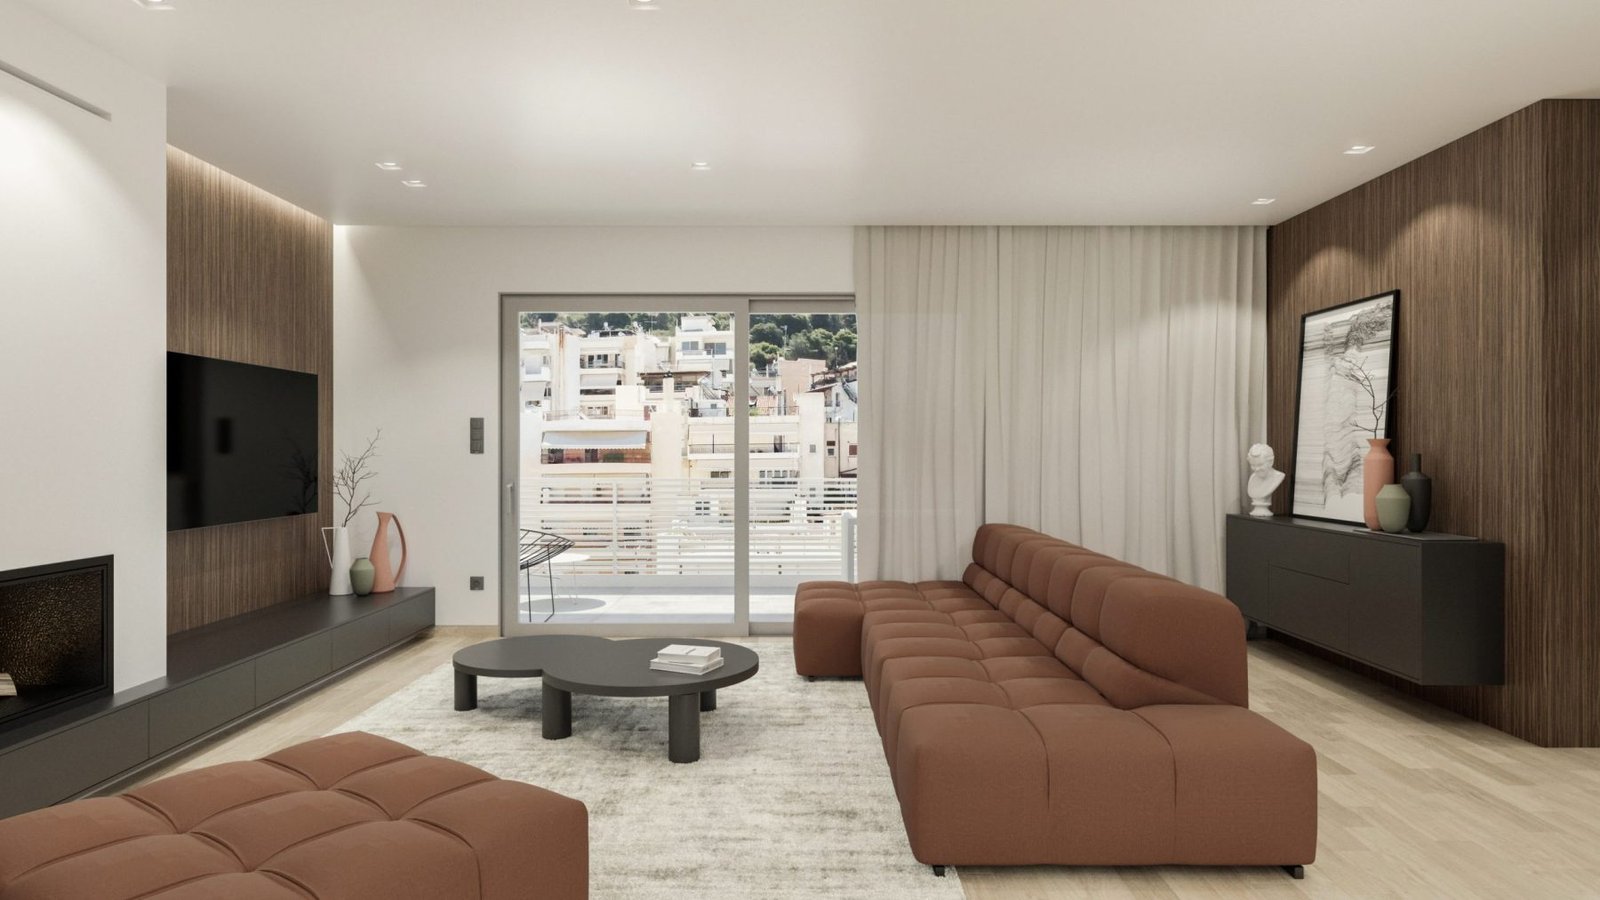 XK Penthouse apartment interior design